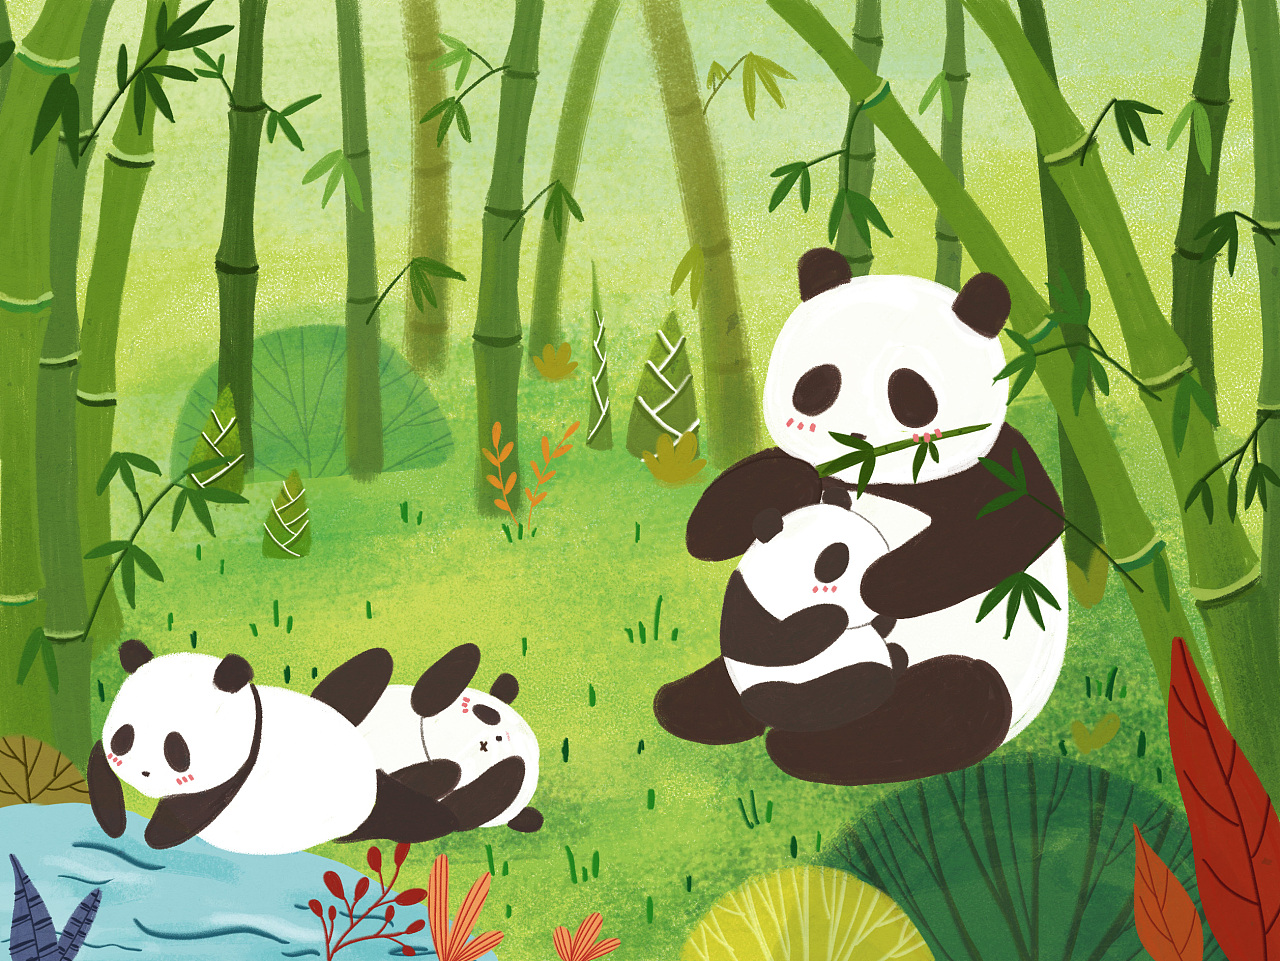 战战兢兢完稿的第一本绘本～～与熊猫有关